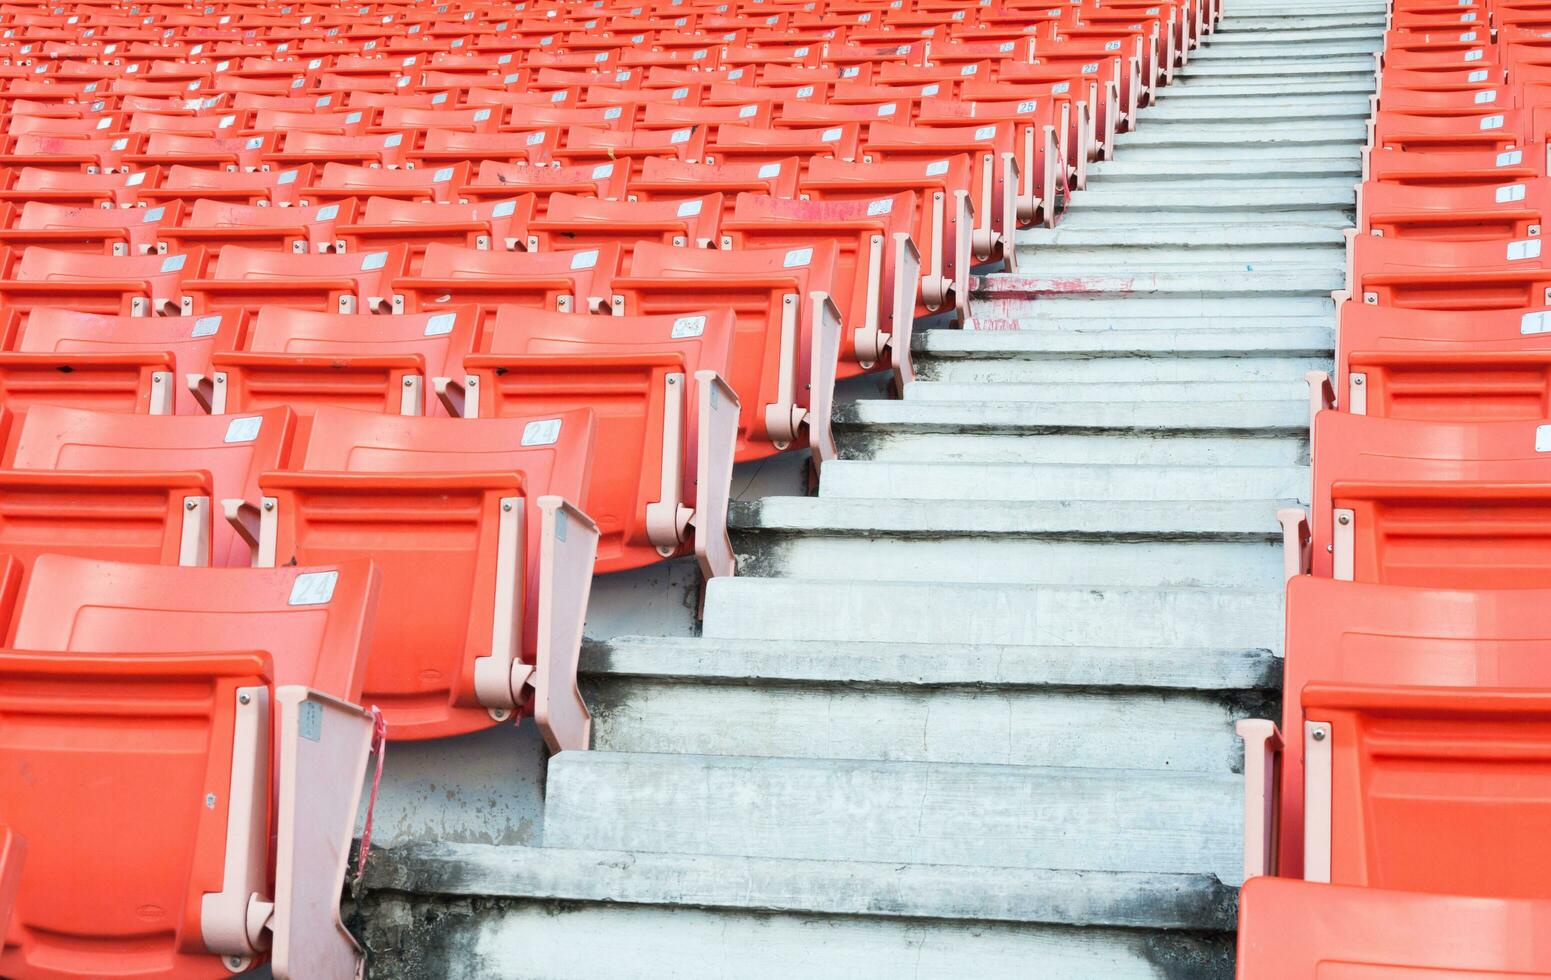 leeg oranje stoelen Bij stadion, rijen van stoel Aan een voetbal stadion foto